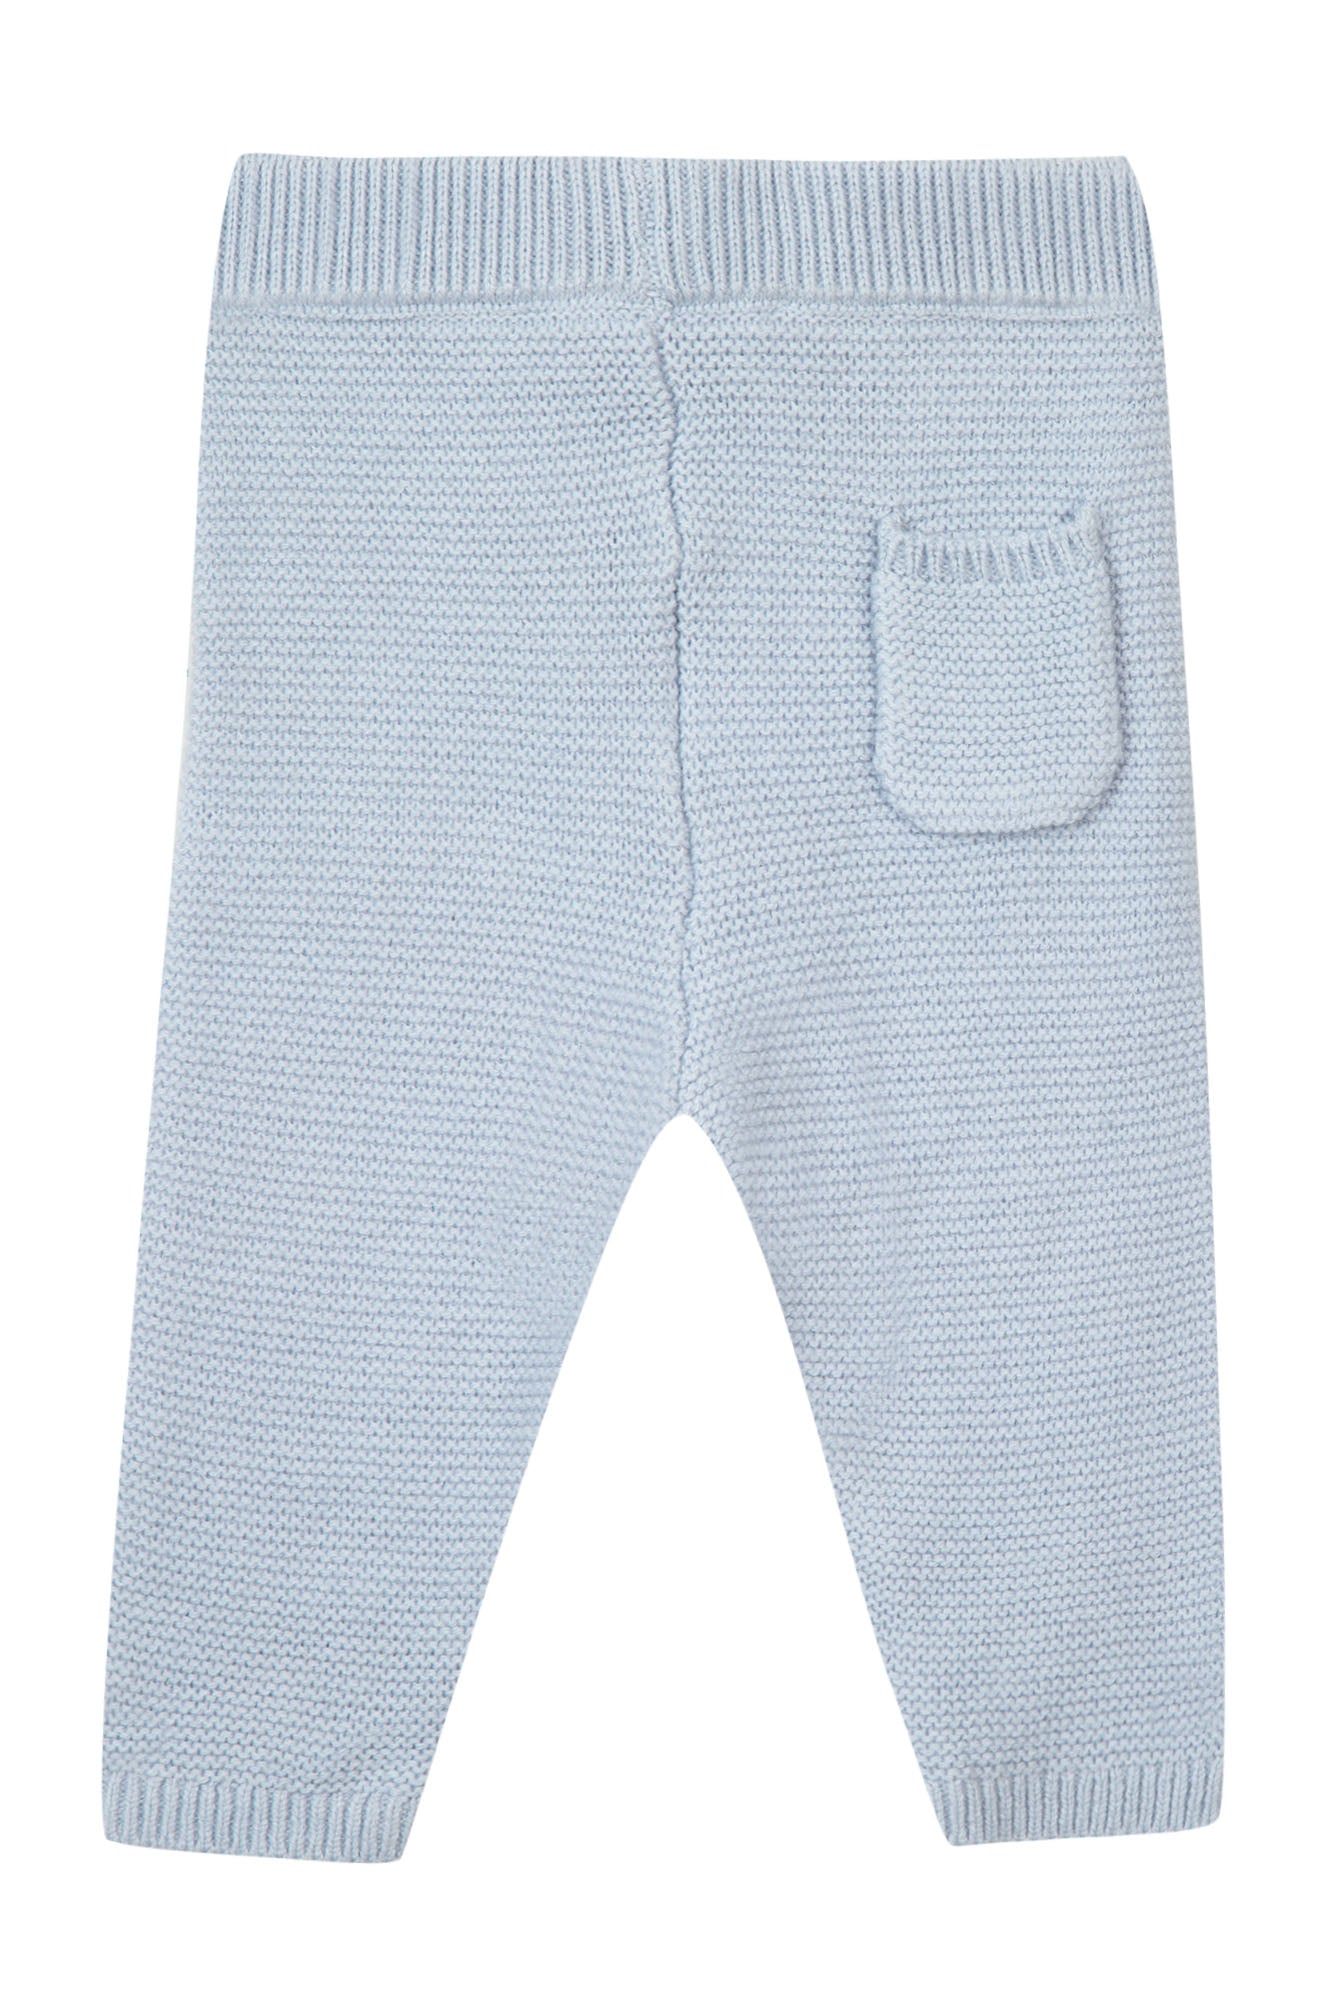 Legging - Blue in Knitwear Grey Blue / 3M